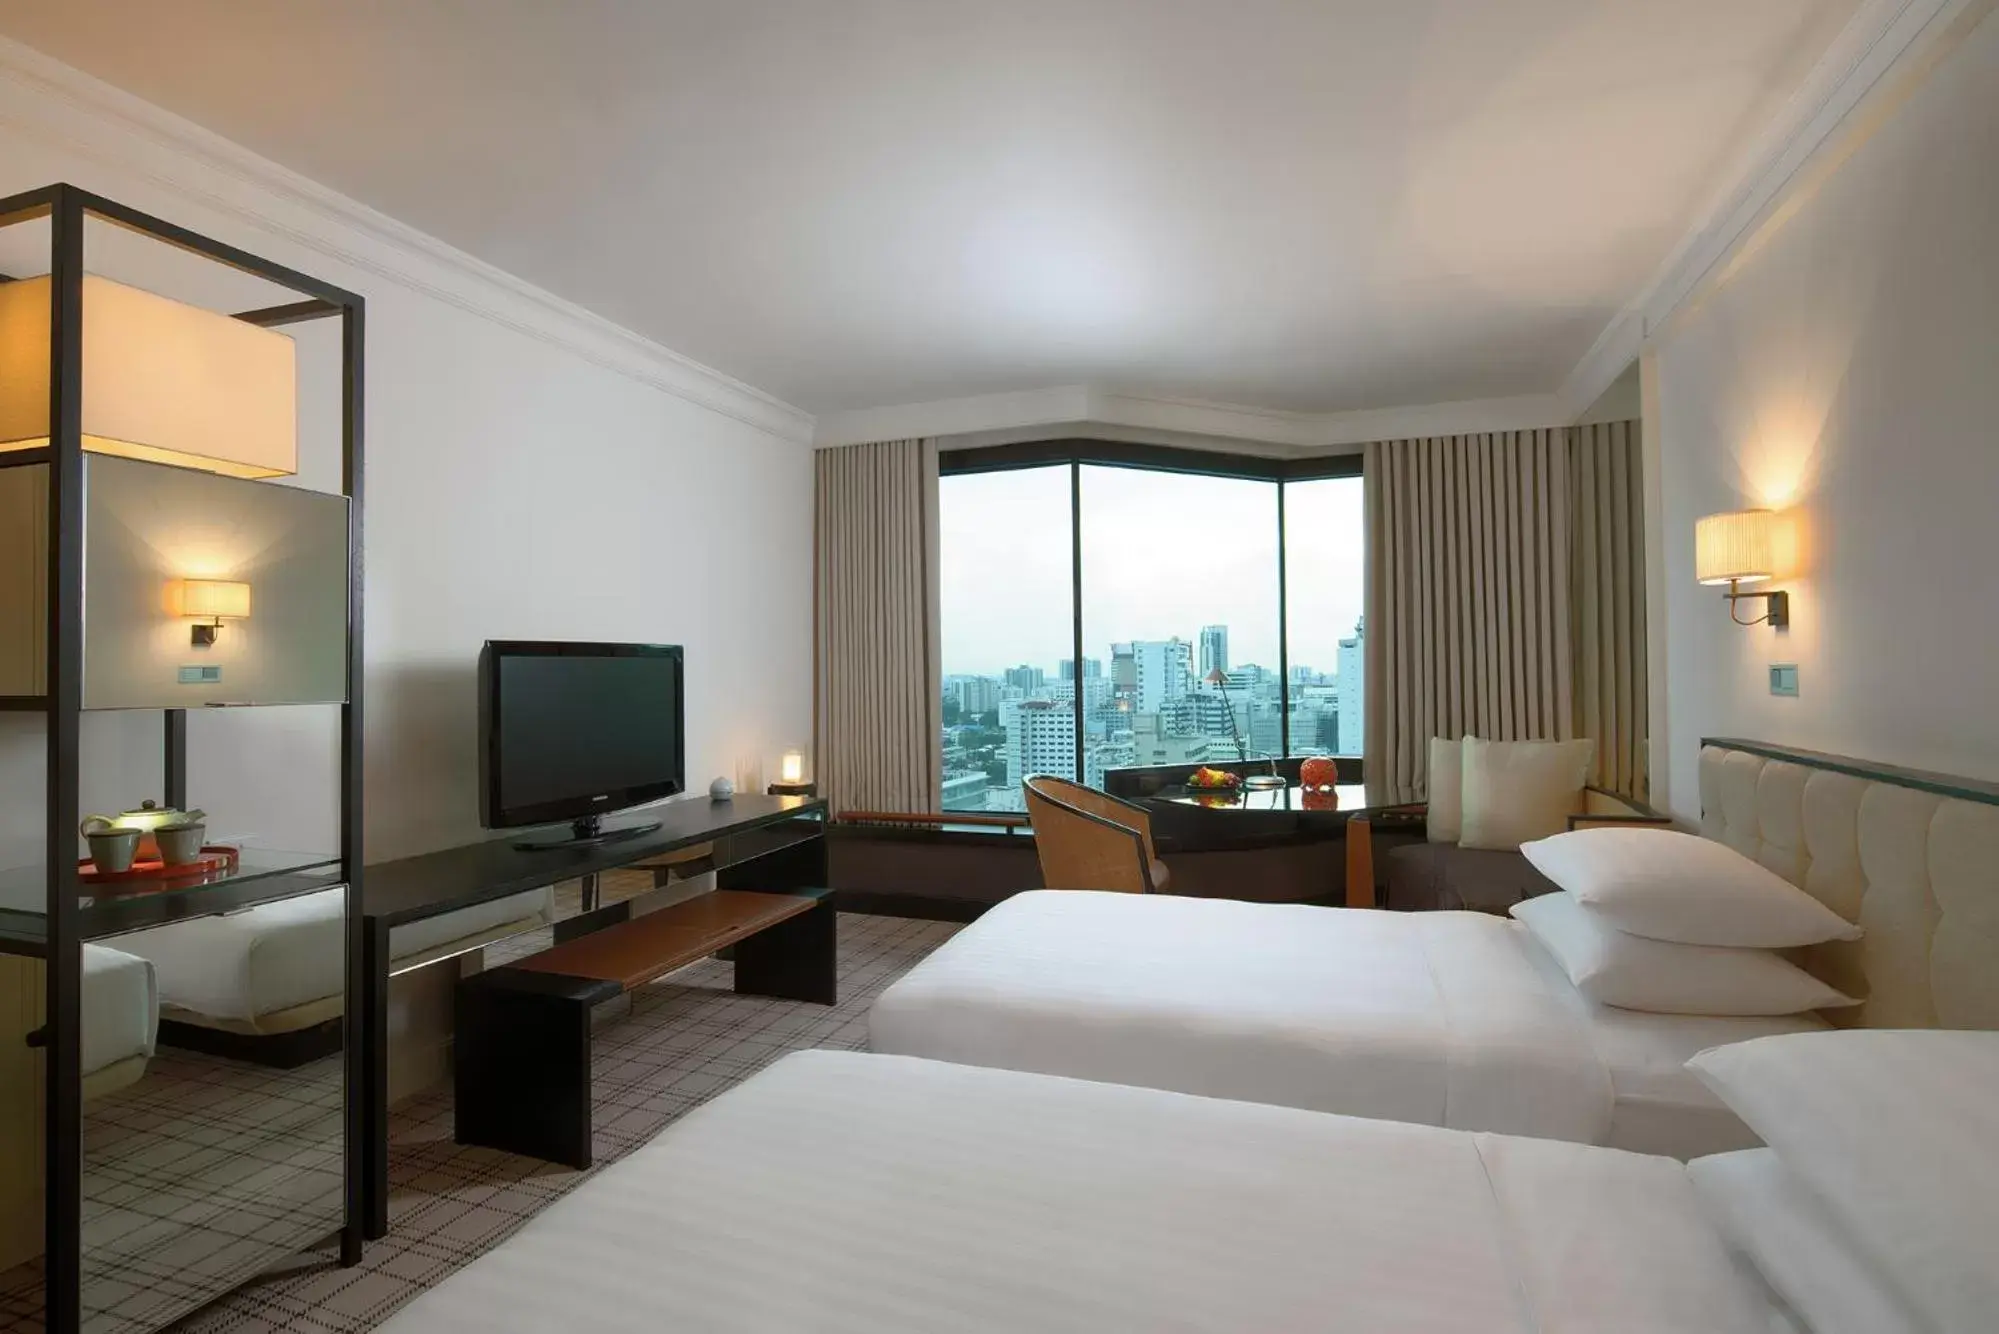 Twin Room with View in Grand Hyatt Erawan Bangkok